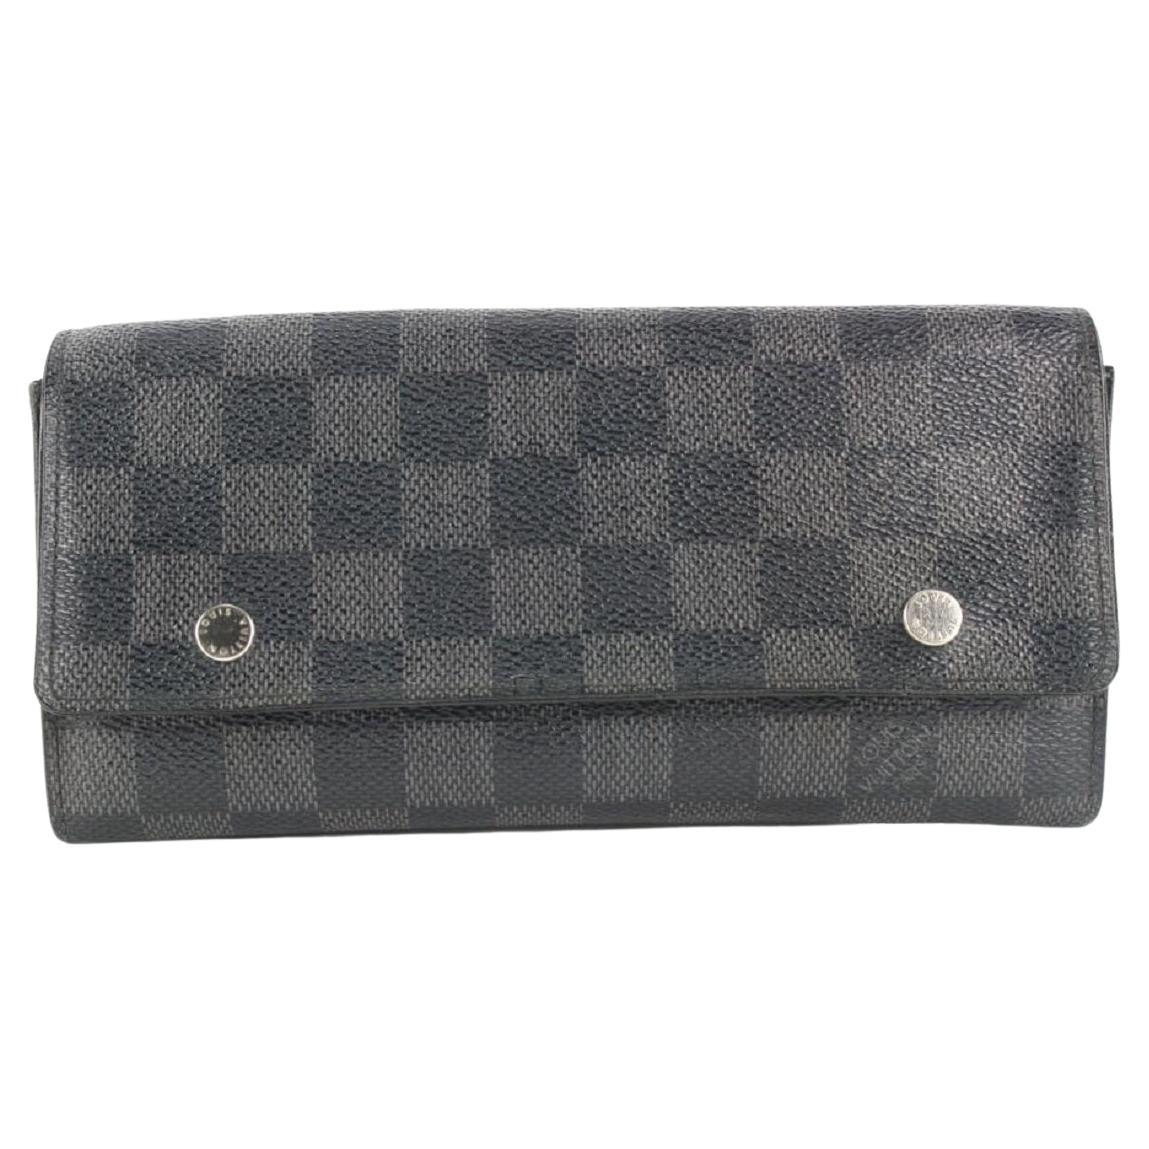 Louis Vuitton Damier Graphite Compact Modulable Wallet 850lvs48 For Sale